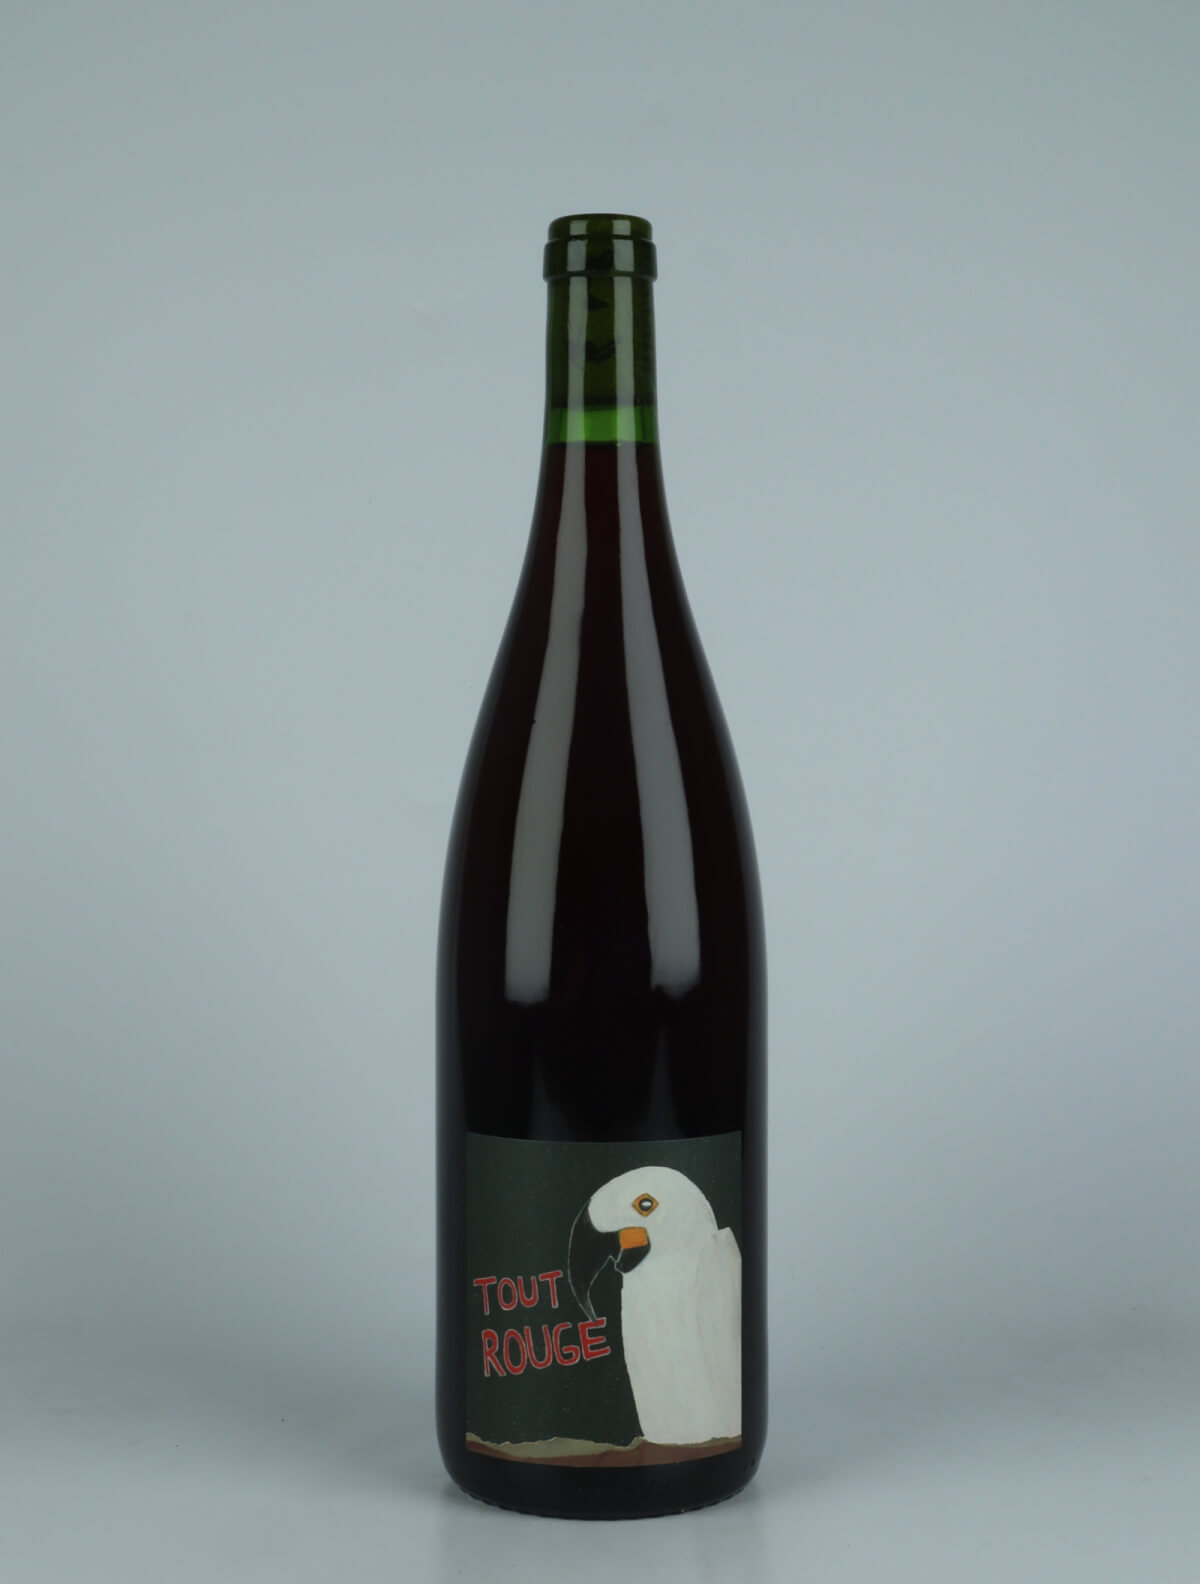 En flaske 2023 Tout Rouge - Litre Rødvin fra Domaine Rietsch, Alsace i Frankrig